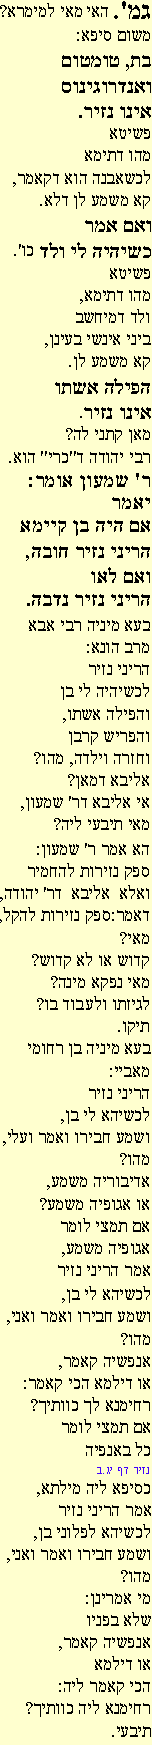 Ghemara 13ab